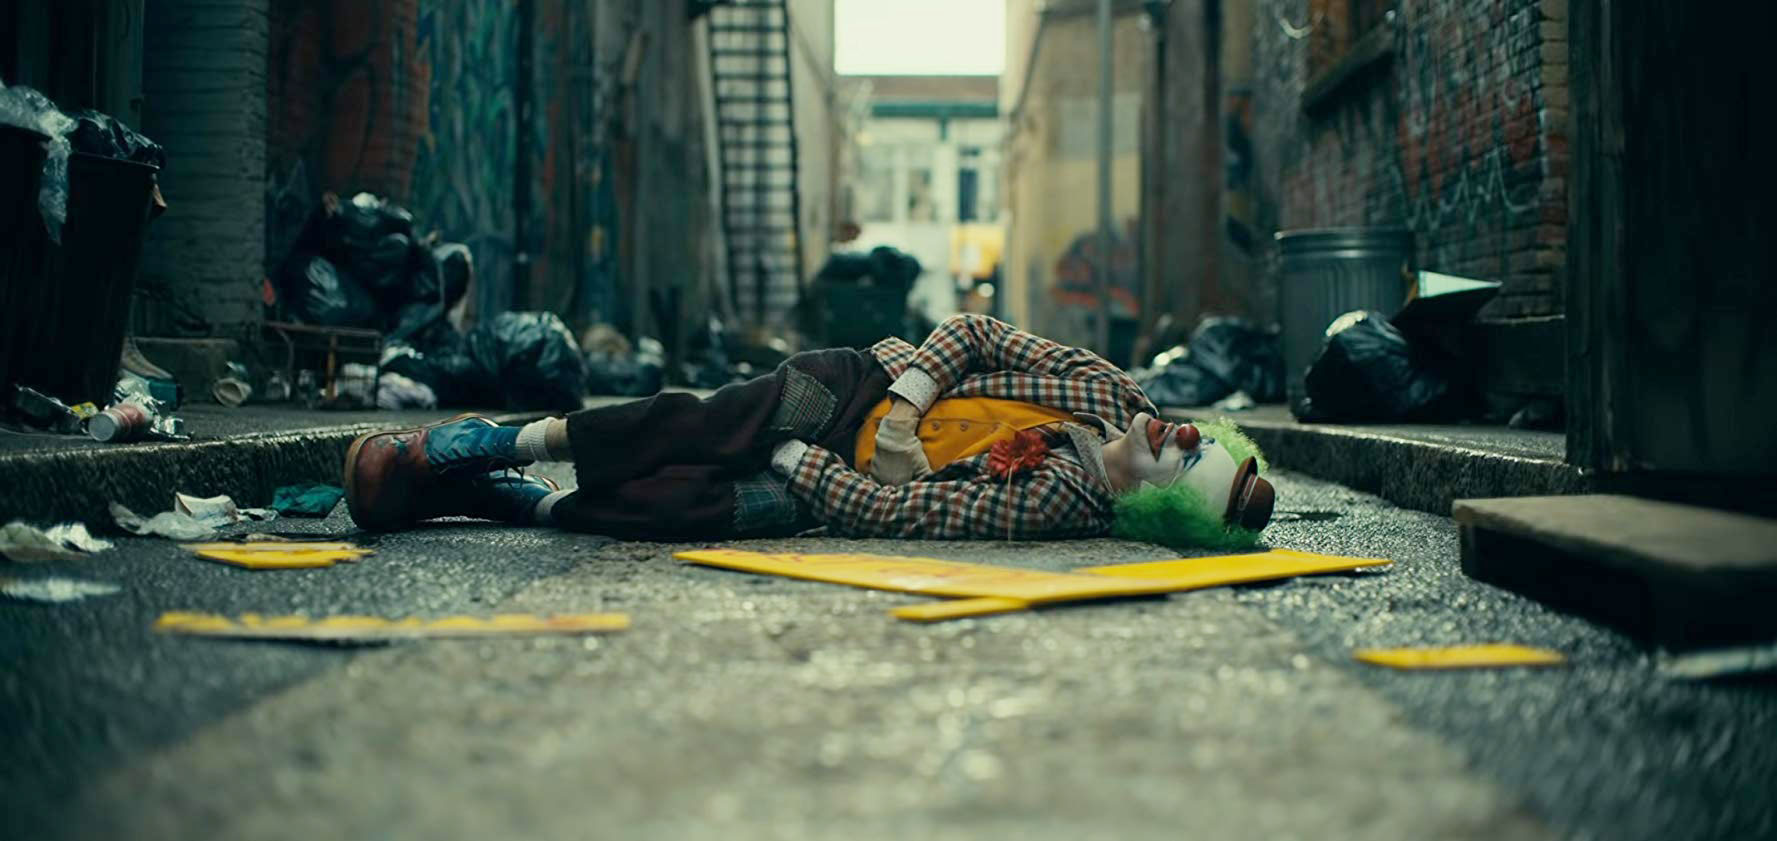 Joaquin Phoenix – Joker (2019) Photo: Warner Bros. Pictures